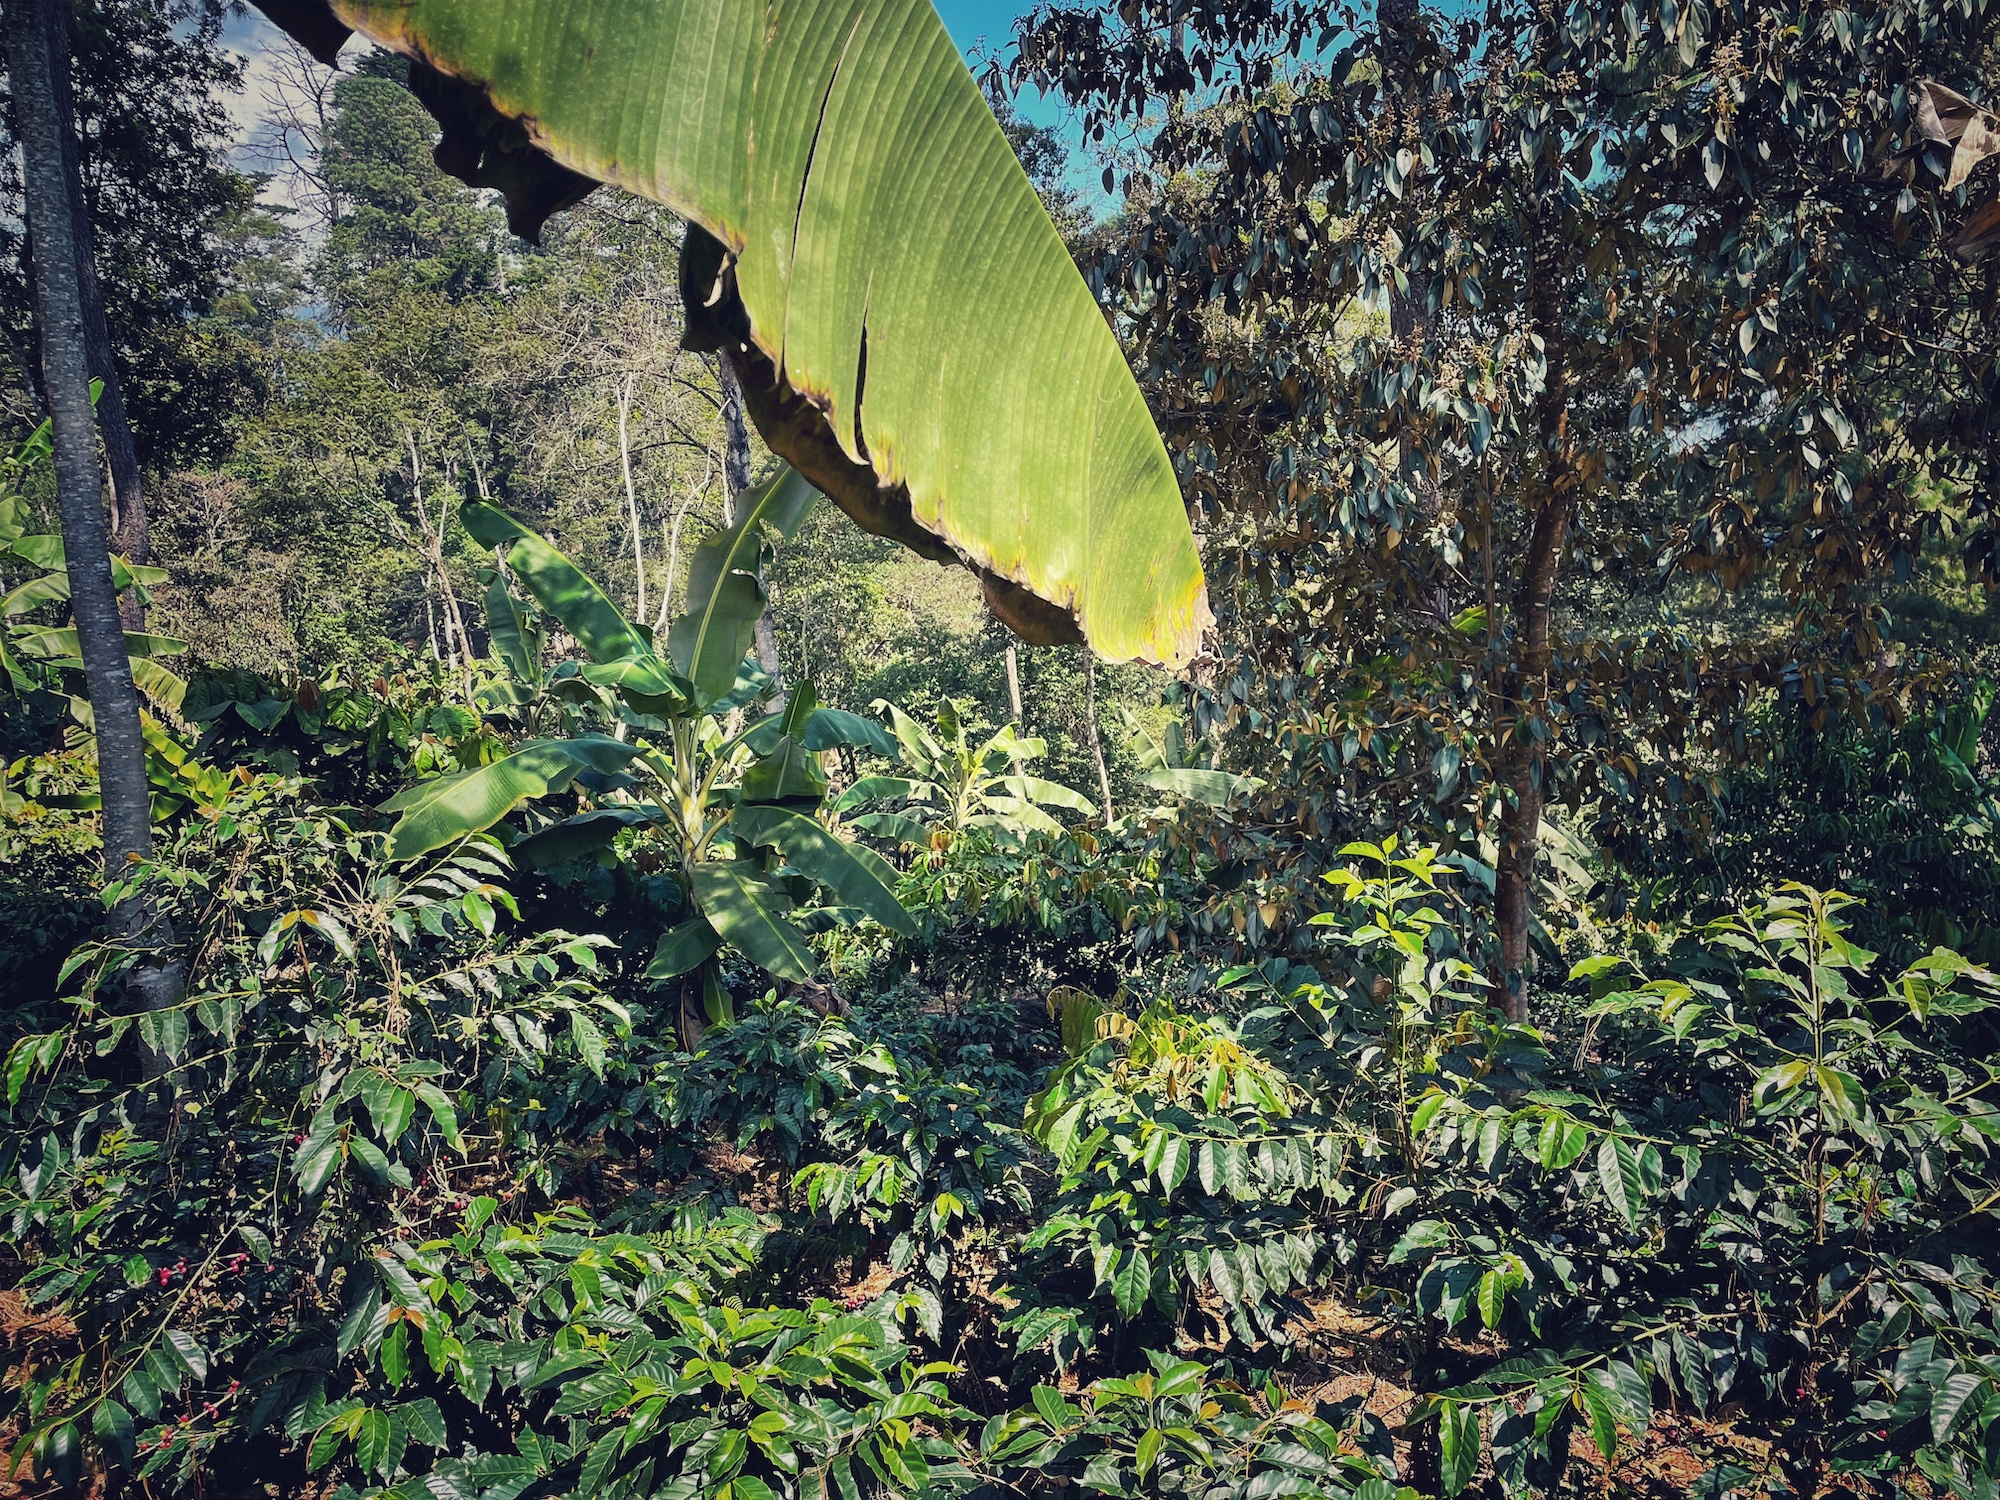 Blick in eine Kaffeeplantage auf der die Kaffeepflanzen in einem tropischen Waldsystem, zwischen vielen weiteren Bäumen wachsen.